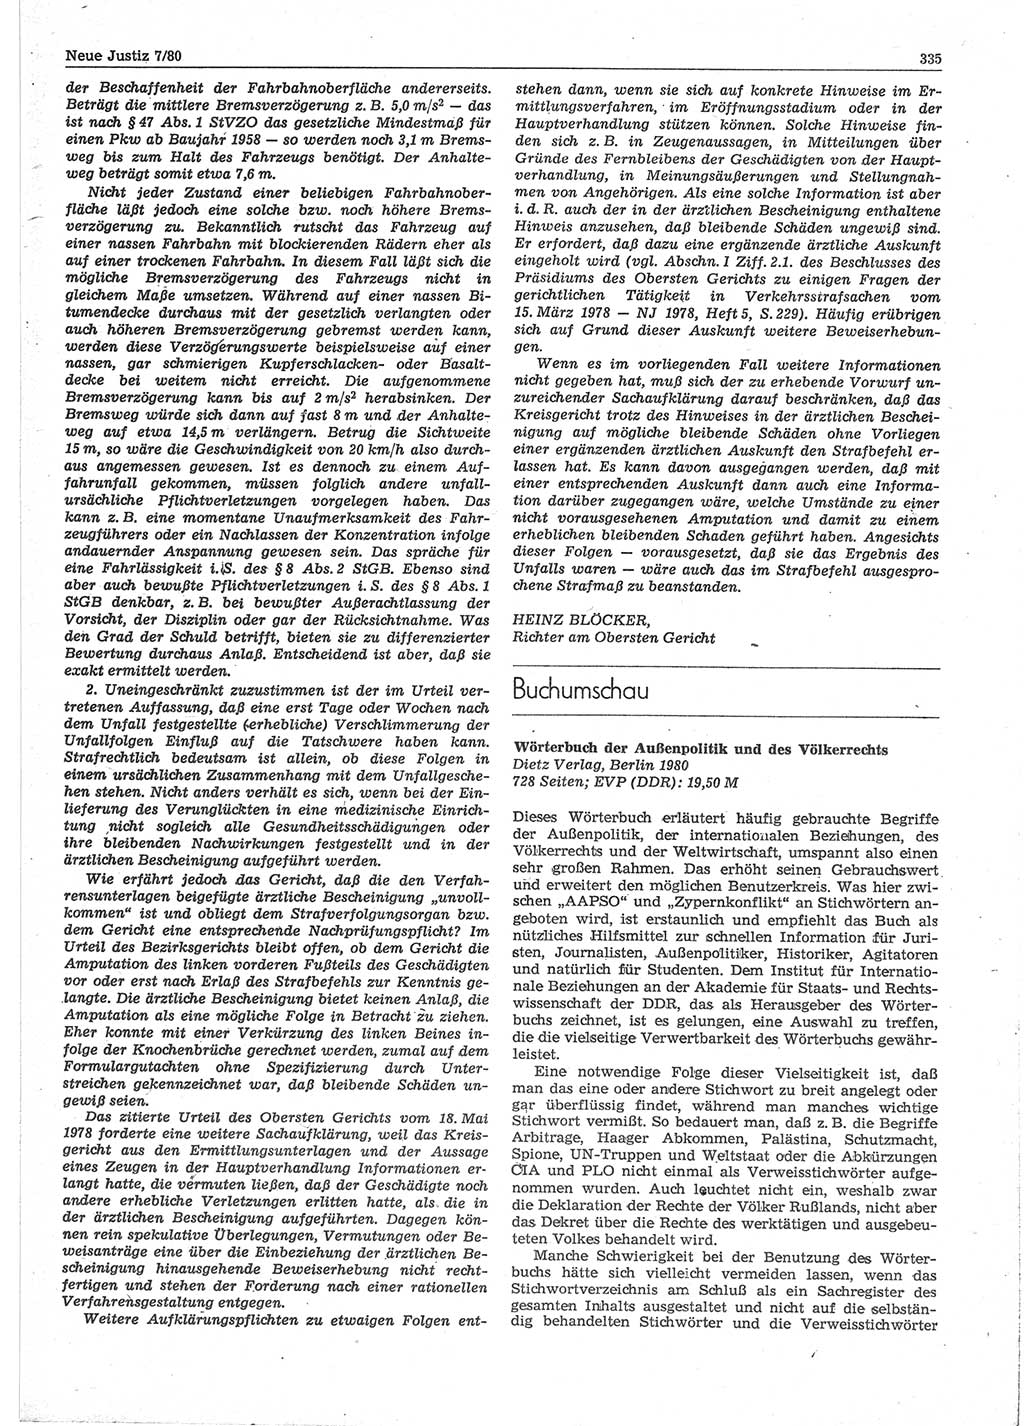 Neue Justiz (NJ), Zeitschrift für sozialistisches Recht und Gesetzlichkeit [Deutsche Demokratische Republik (DDR)], 34. Jahrgang 1980, Seite 335 (NJ DDR 1980, S. 335)